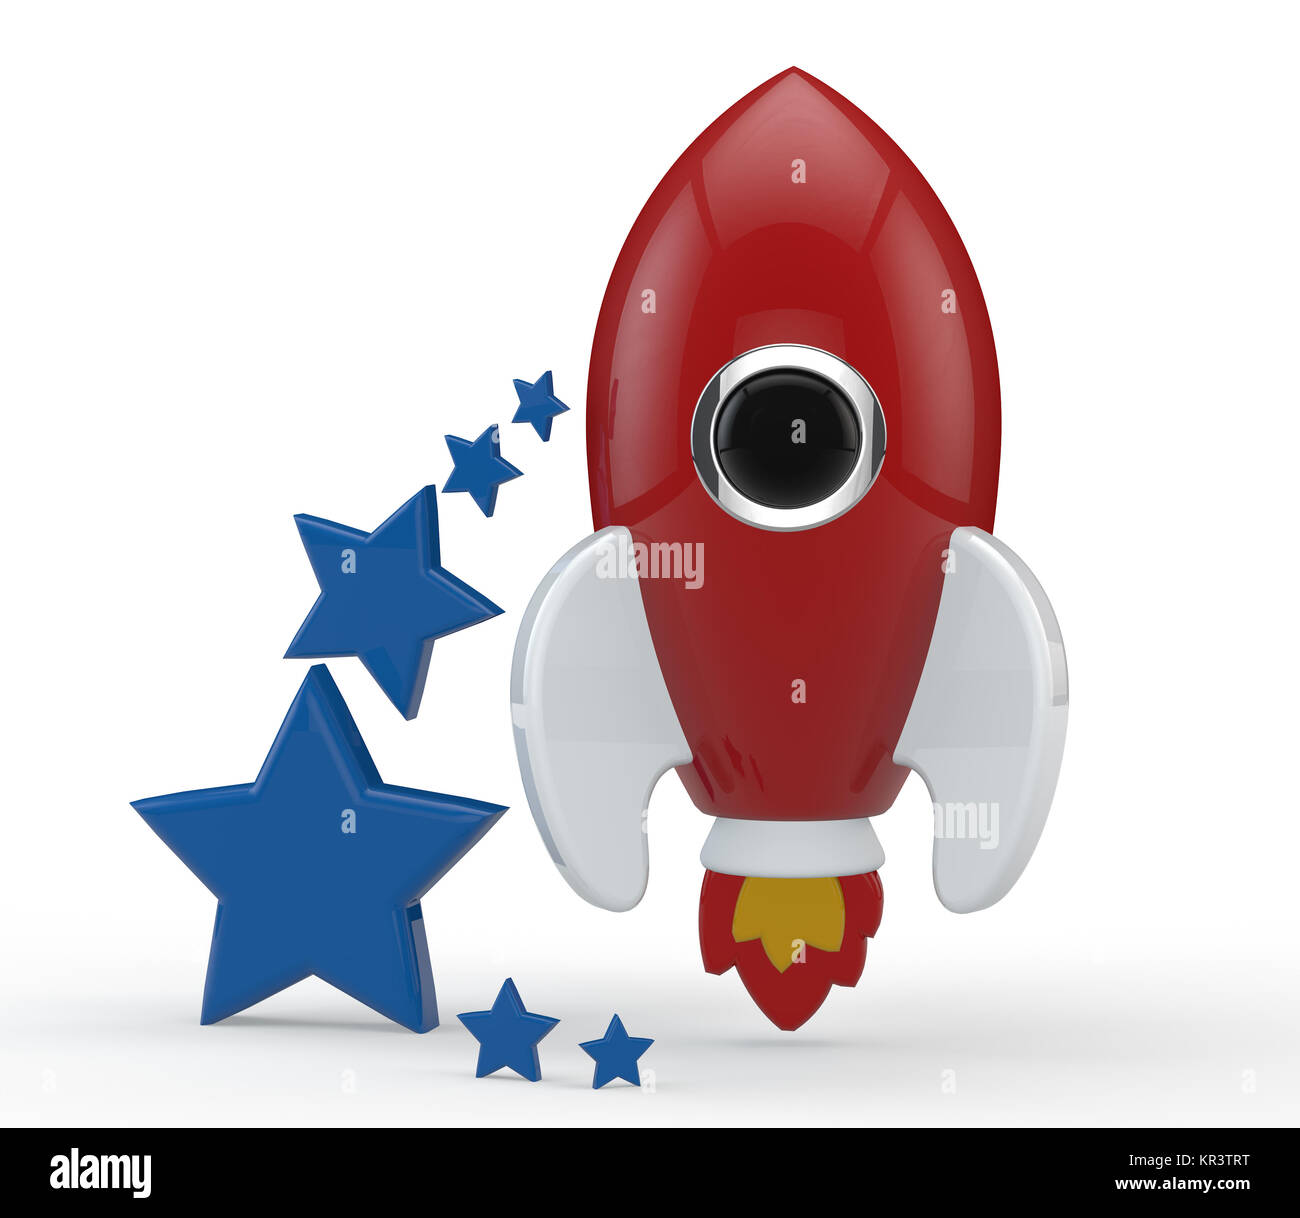 3D-Render eines symbolischen Rakete farbig in Rot mit Flammen Stockfoto